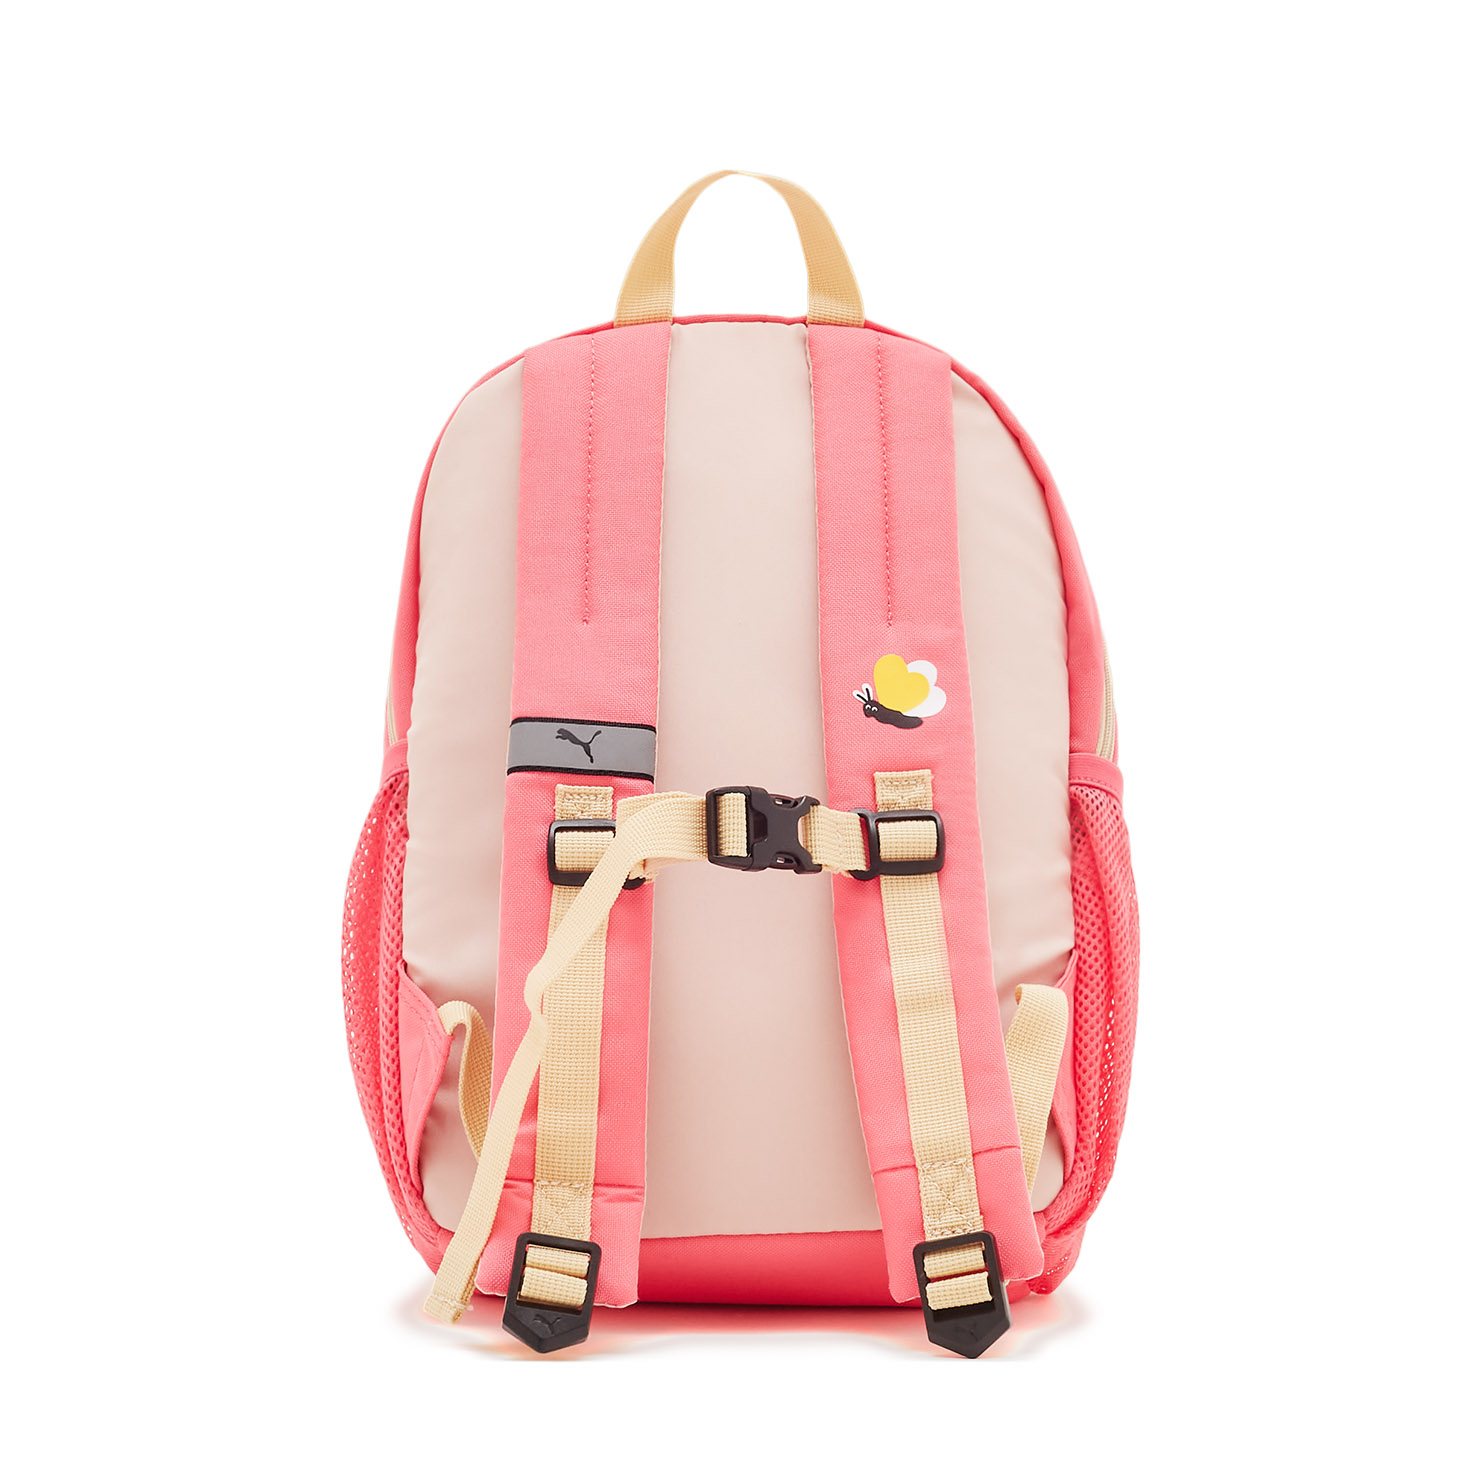 Small World Backpack PUMA, размер Один размер, цвет розовый PM079203 - фото 2